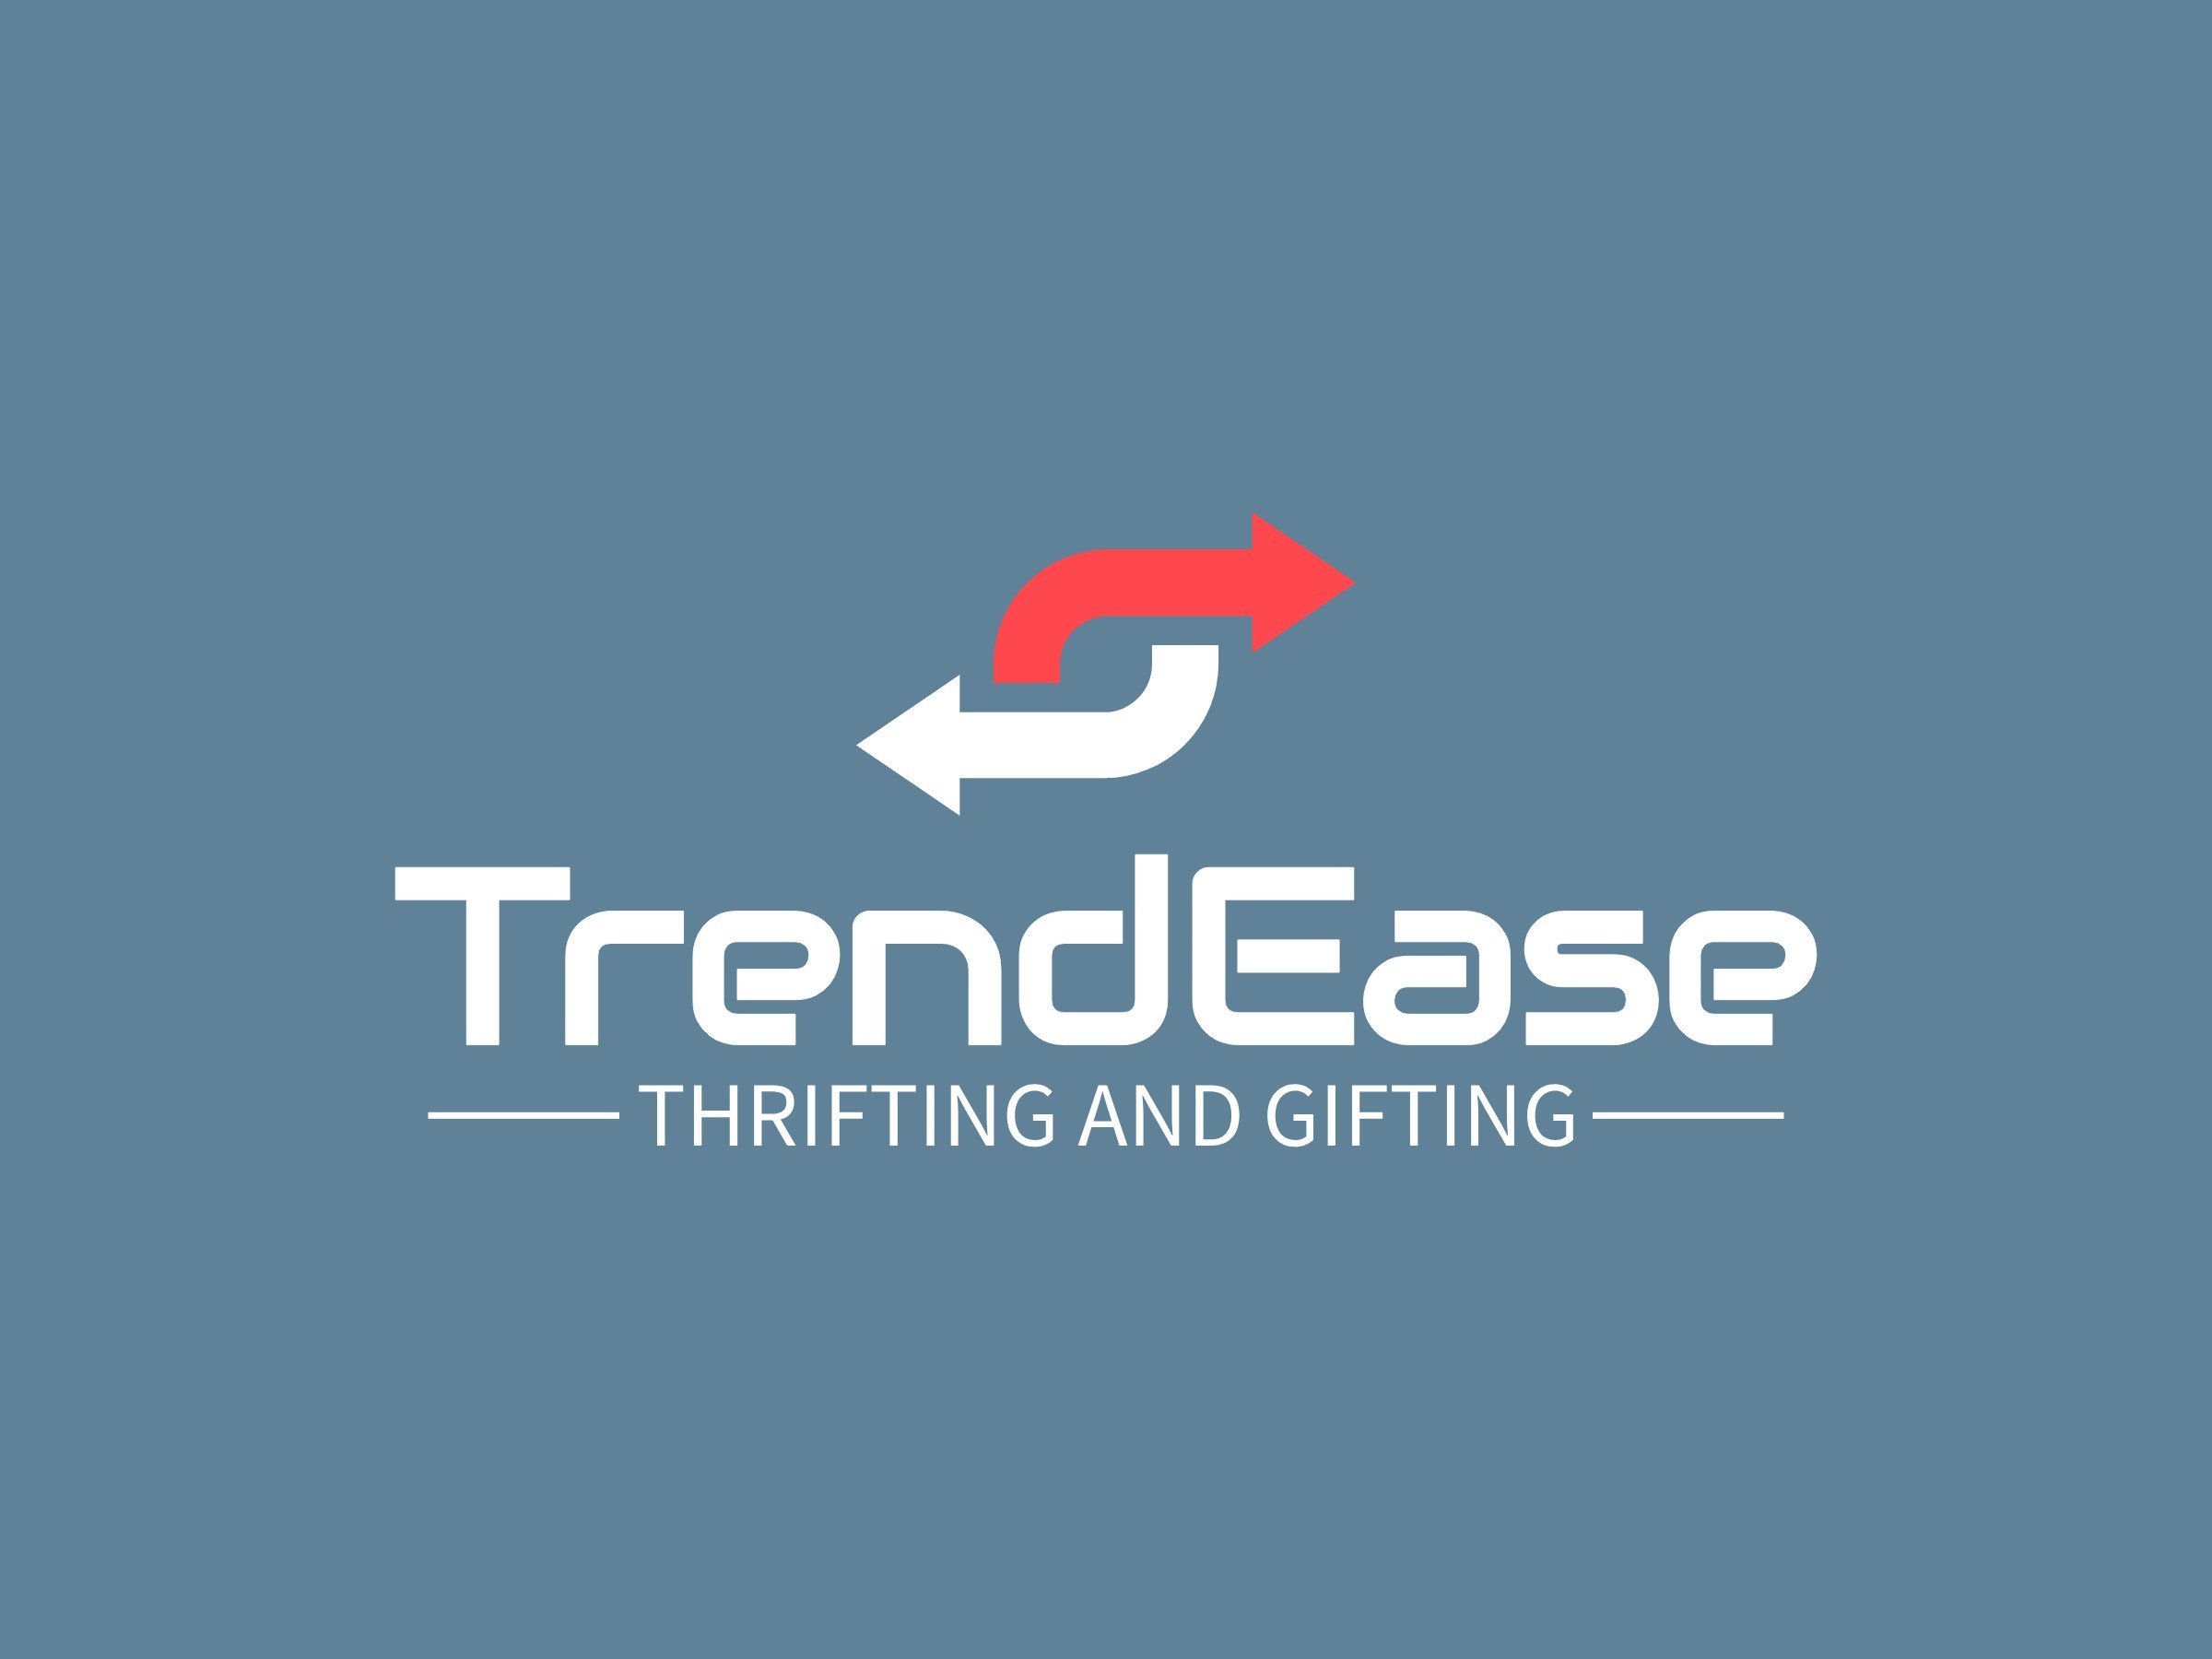 TrendEase logo design